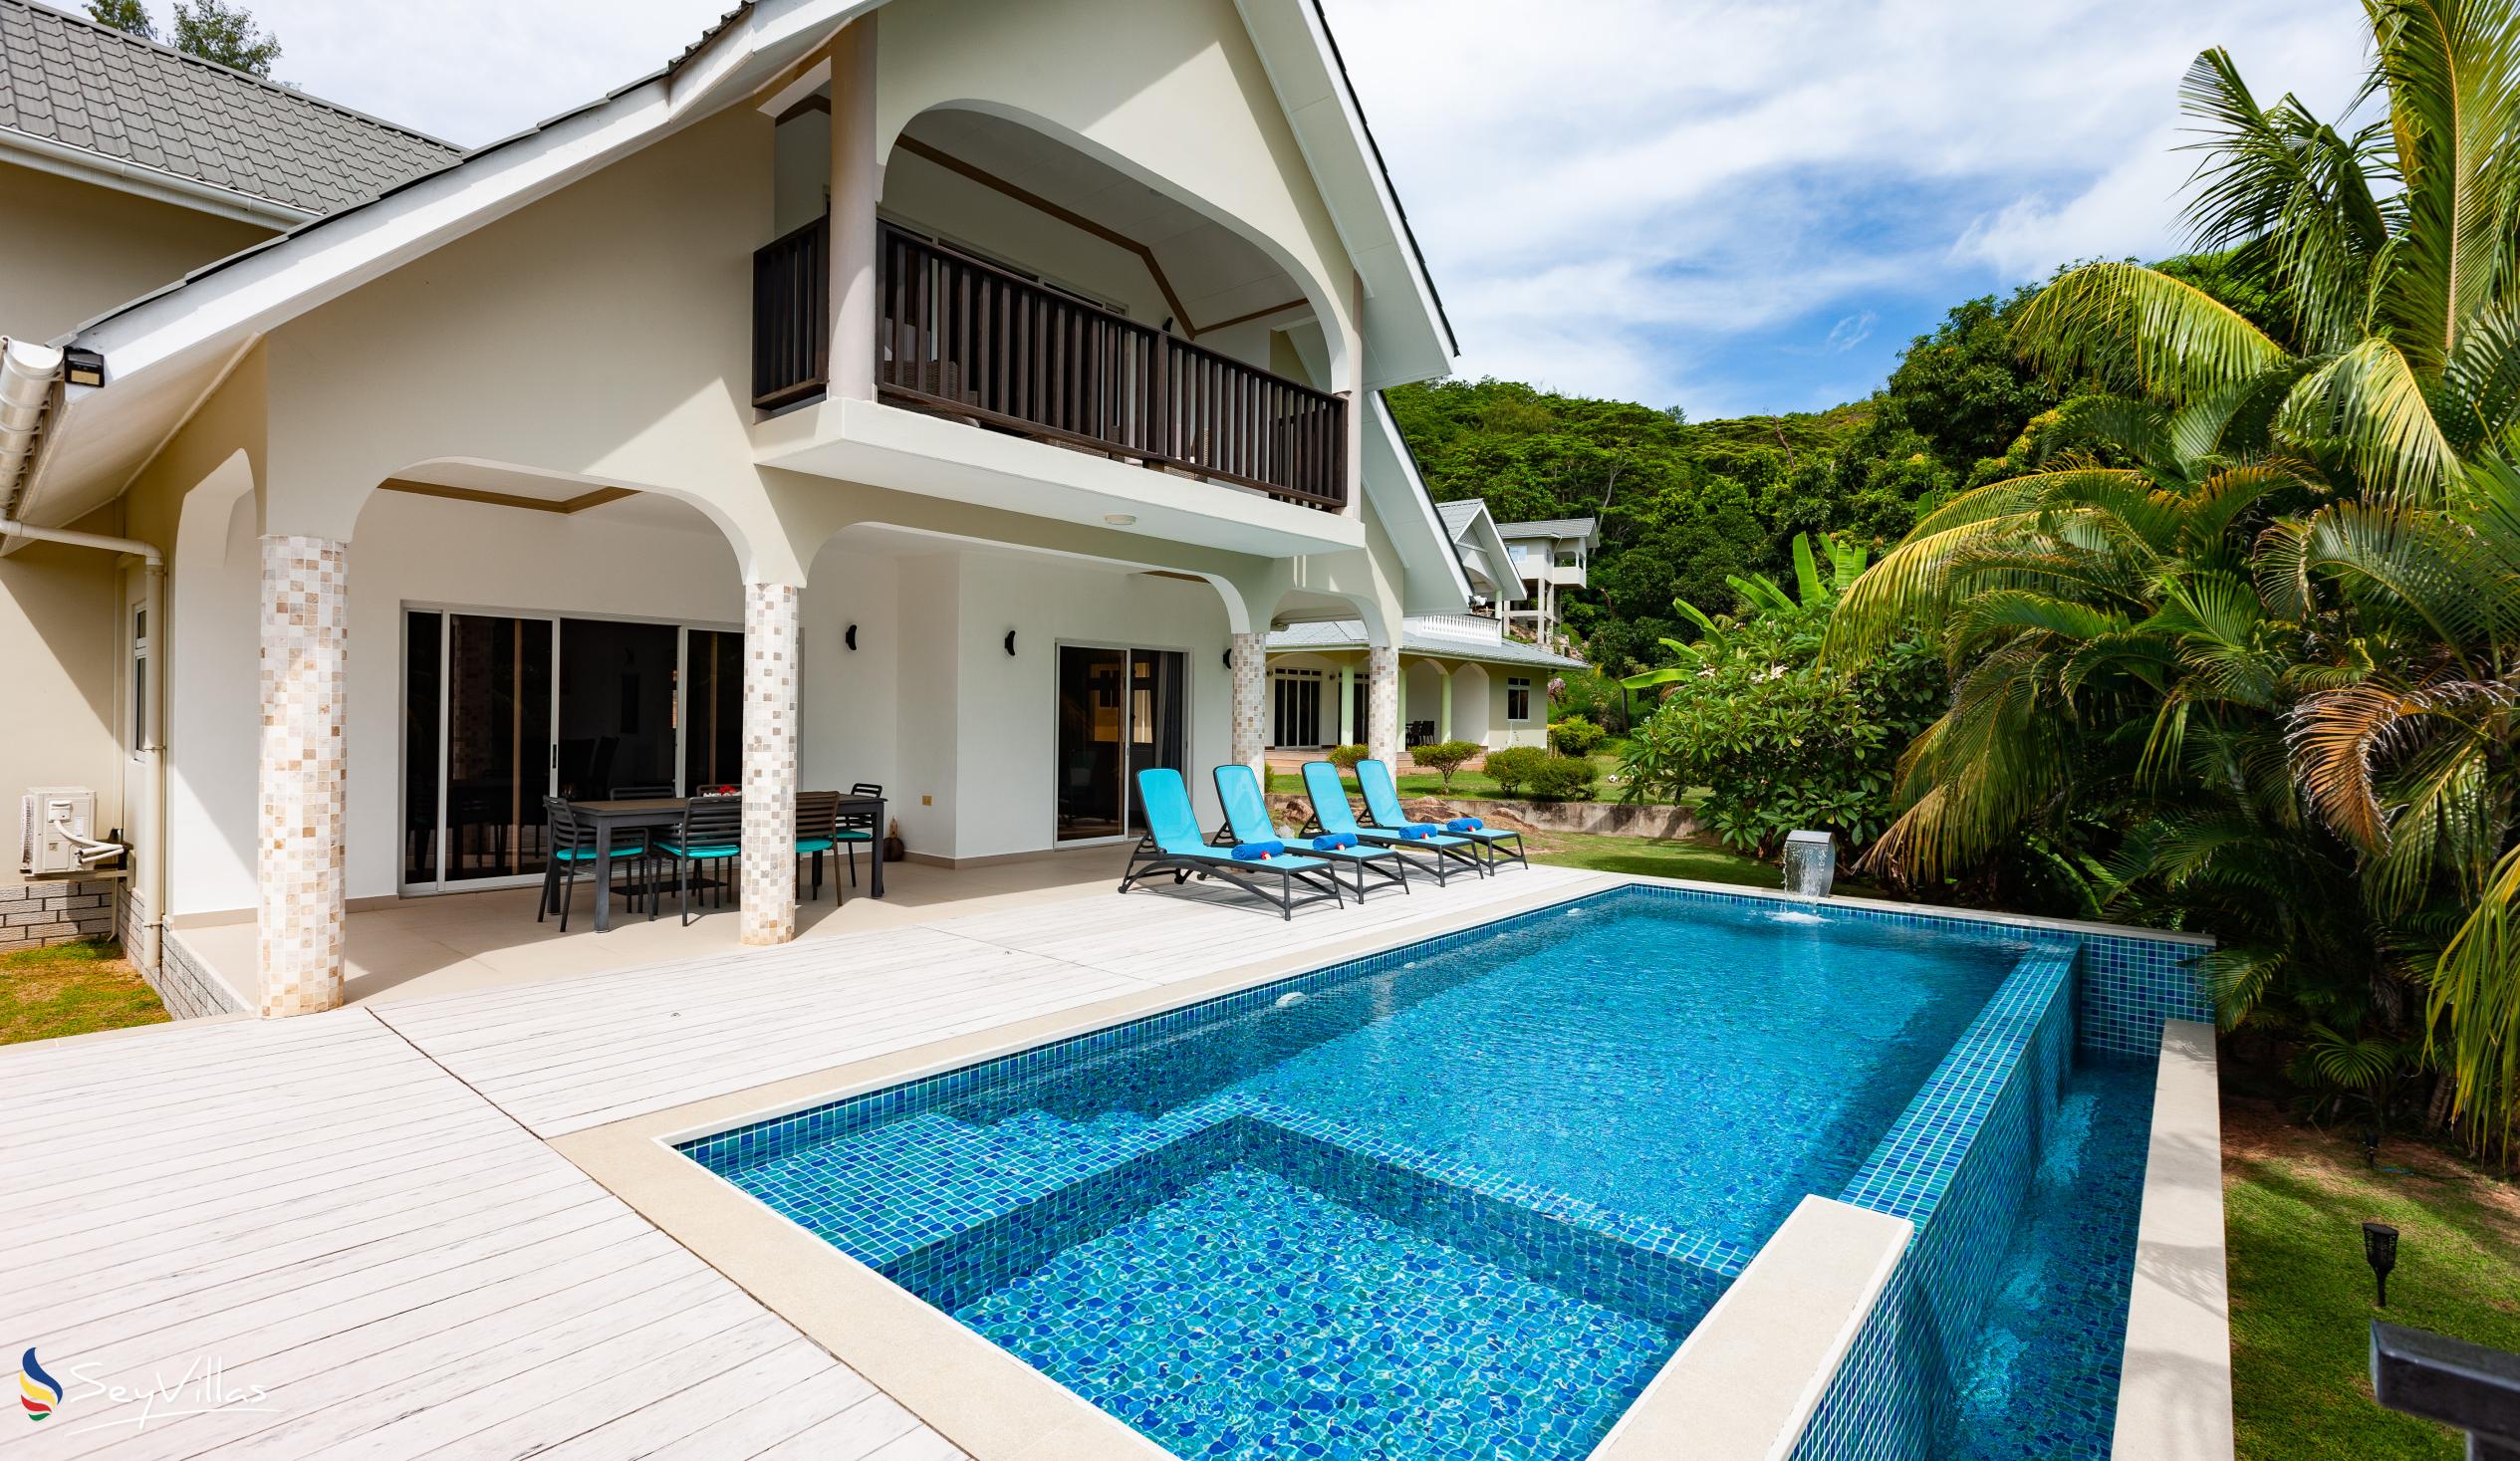 Foto 1: Tranquility Villa - Aussenbereich - Praslin (Seychellen)